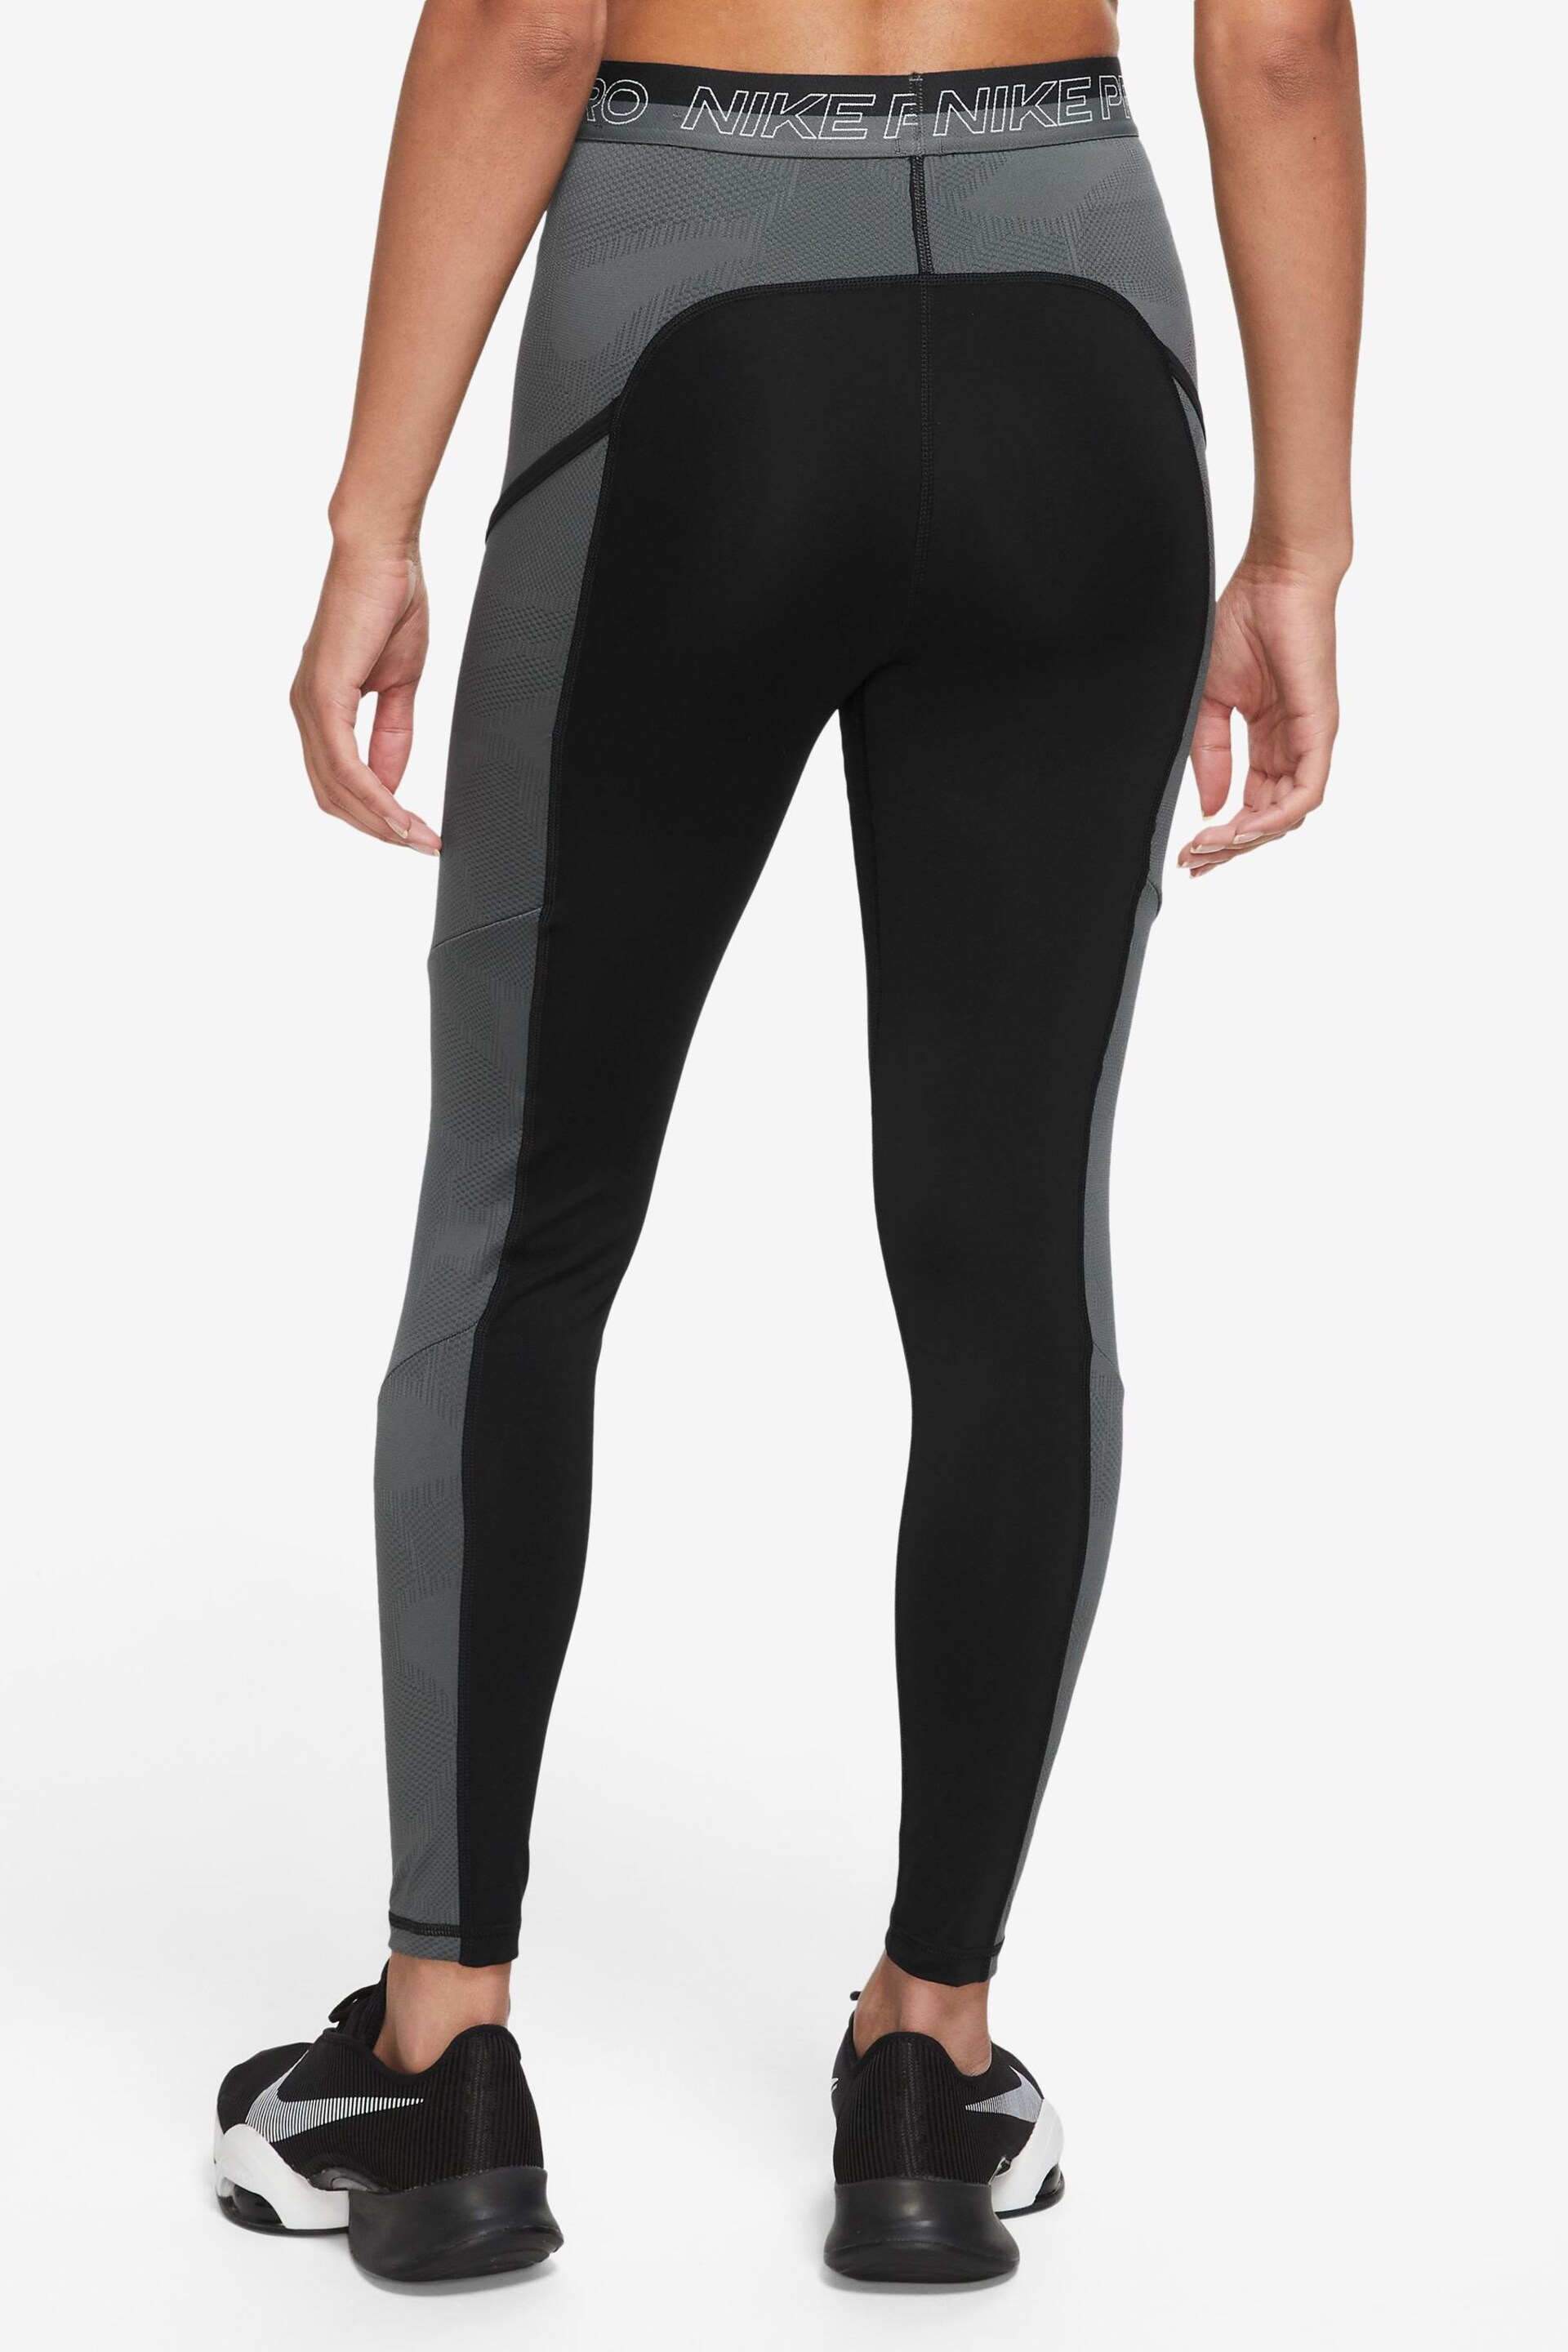 Nike Black/Grey Pro DriFIT High Waisted 7/8 Leggings - Image 2 of 3